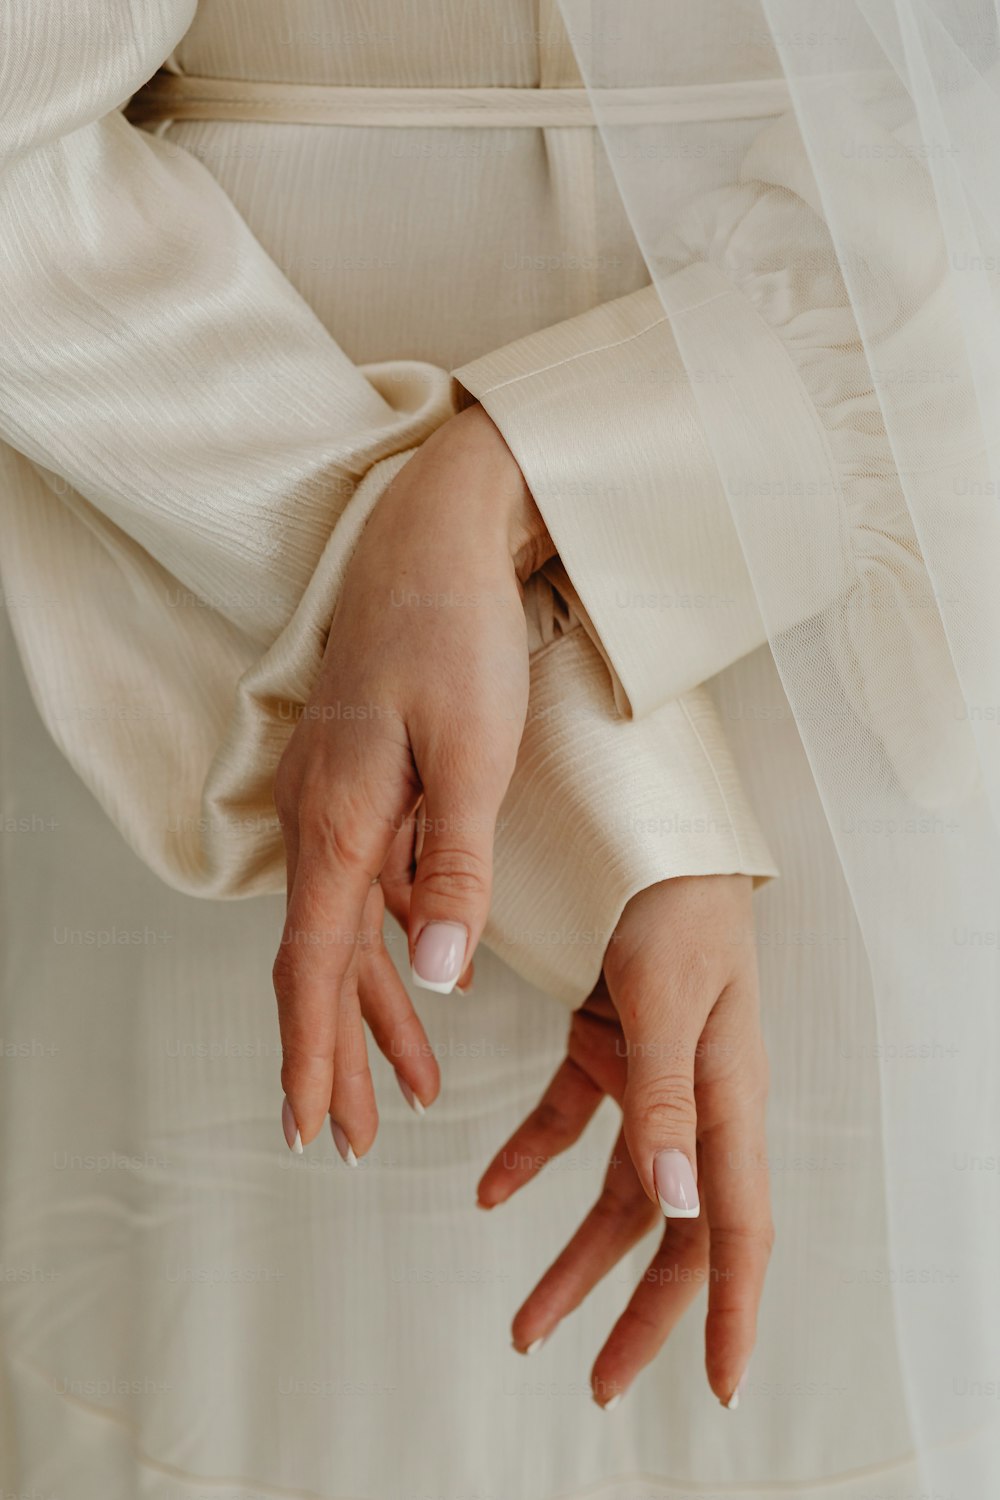 eine Nahaufnahme der Hände einer Person, die ein Hochzeitskleid trägt